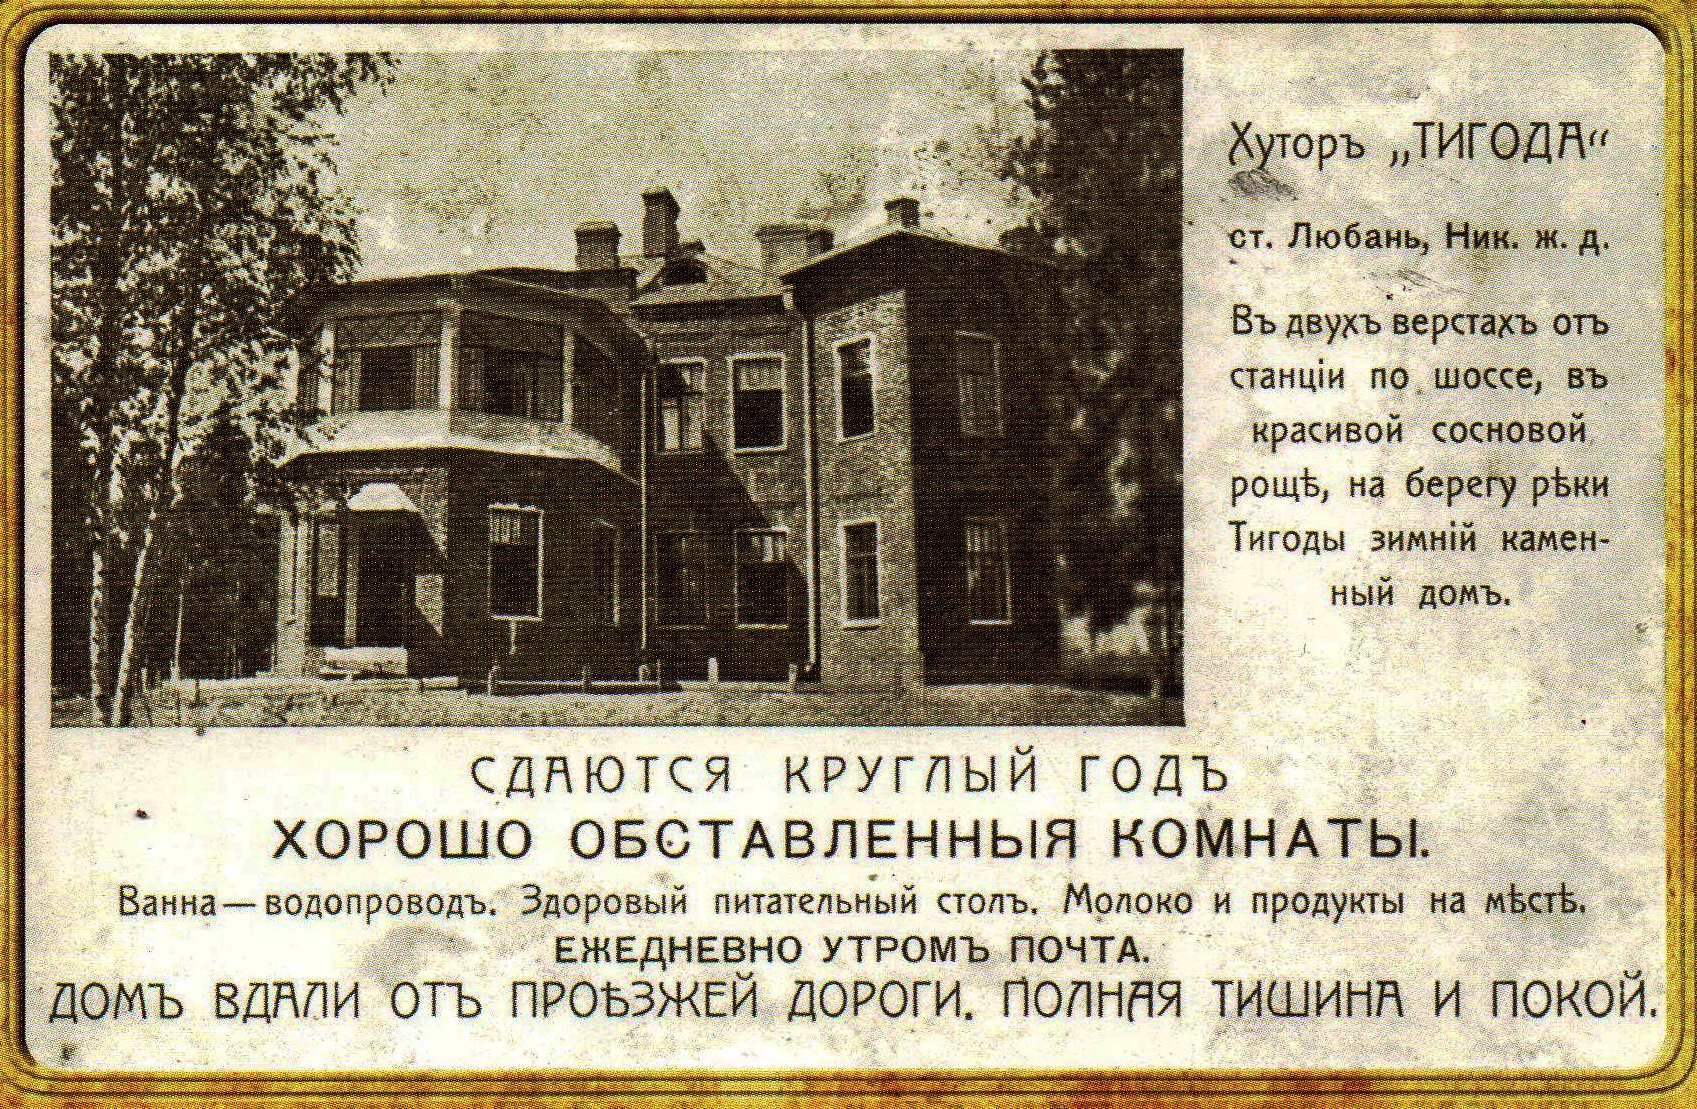 25 Марта 1872 года день рождения почтовой открытки в России